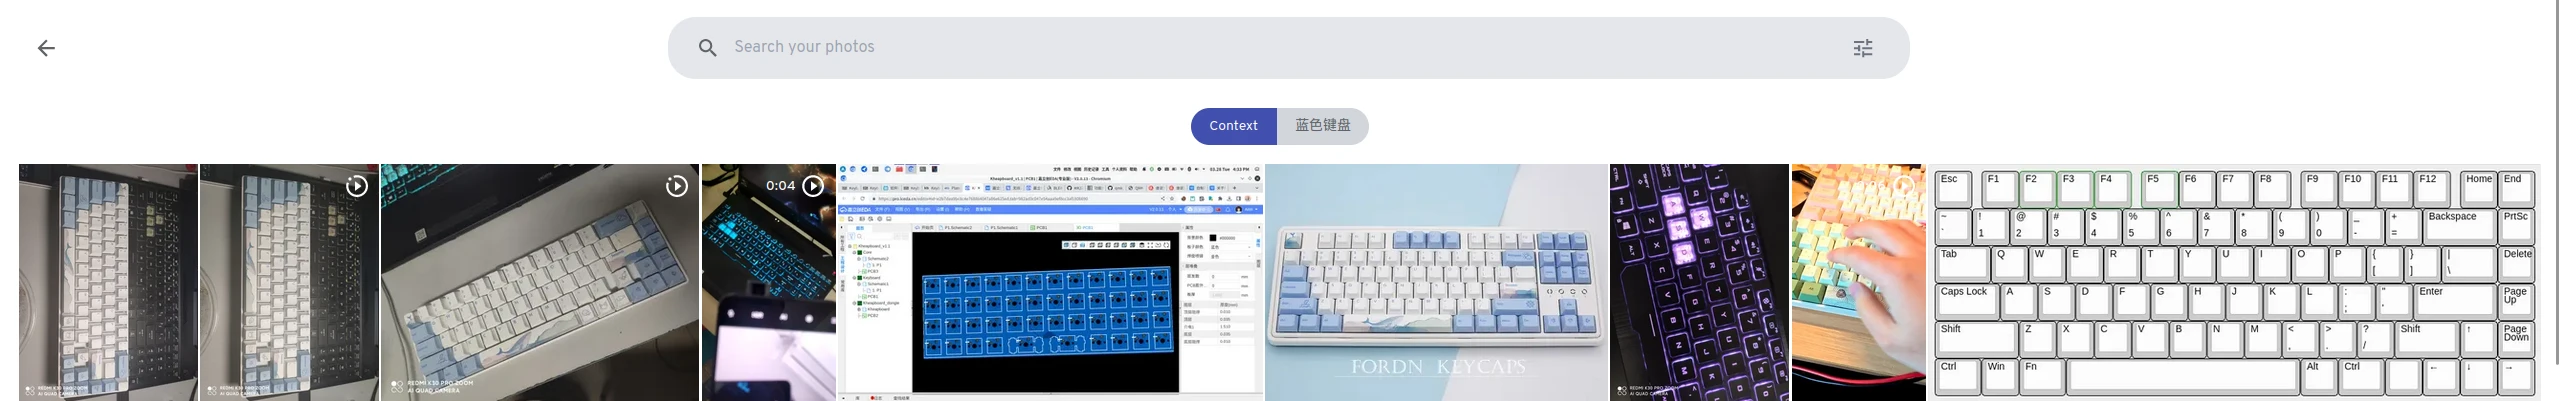 搜索“蓝色键盘”